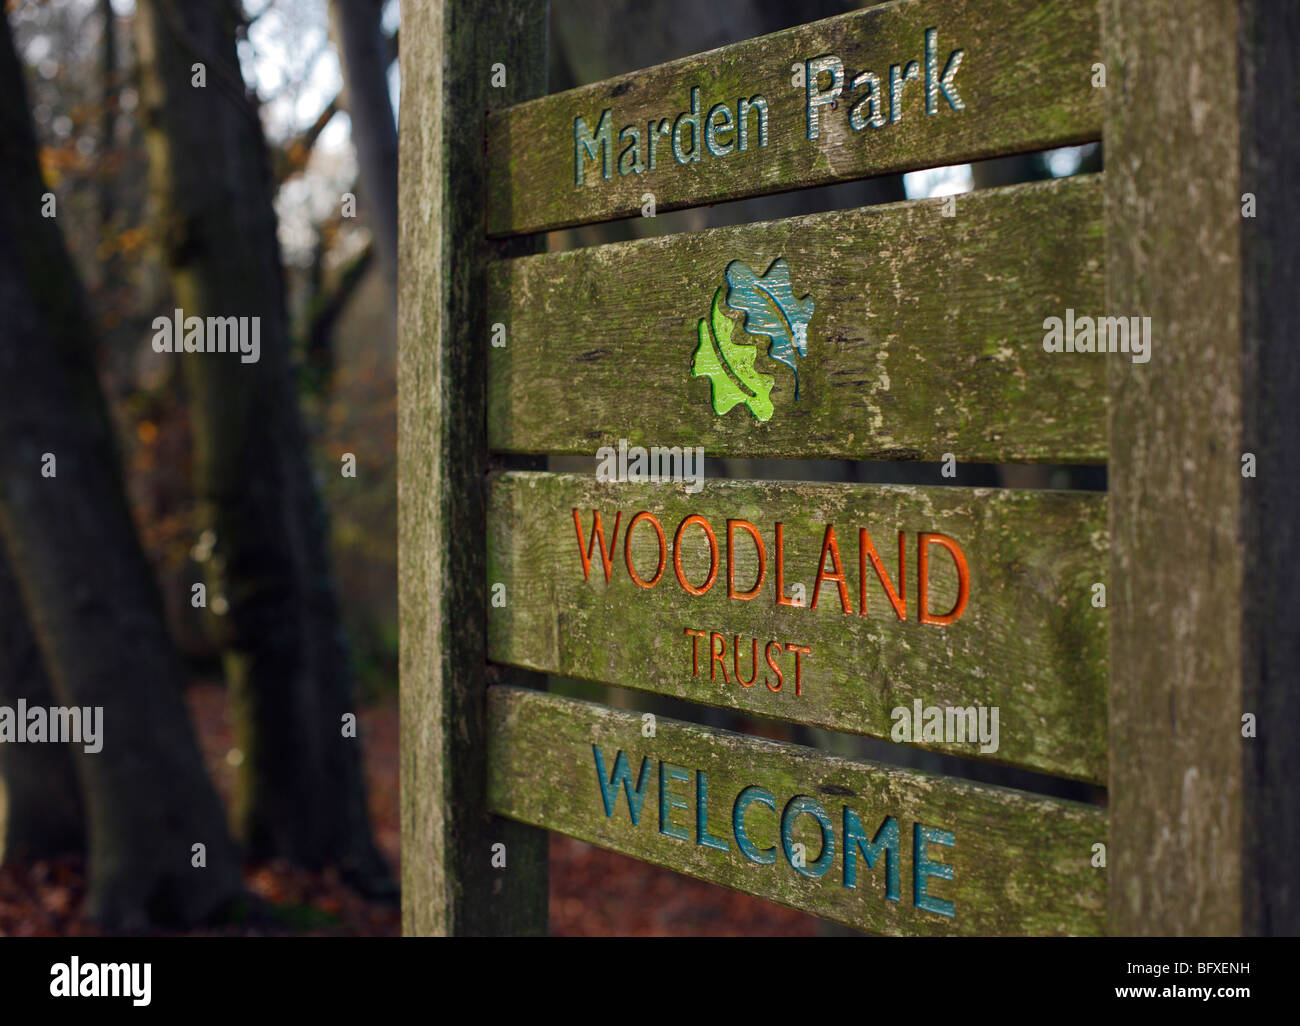 Woodland Trust signe de bienvenue. Marden Park, Woldingham, Surrey, Angleterre, Royaume-Uni. Banque D'Images